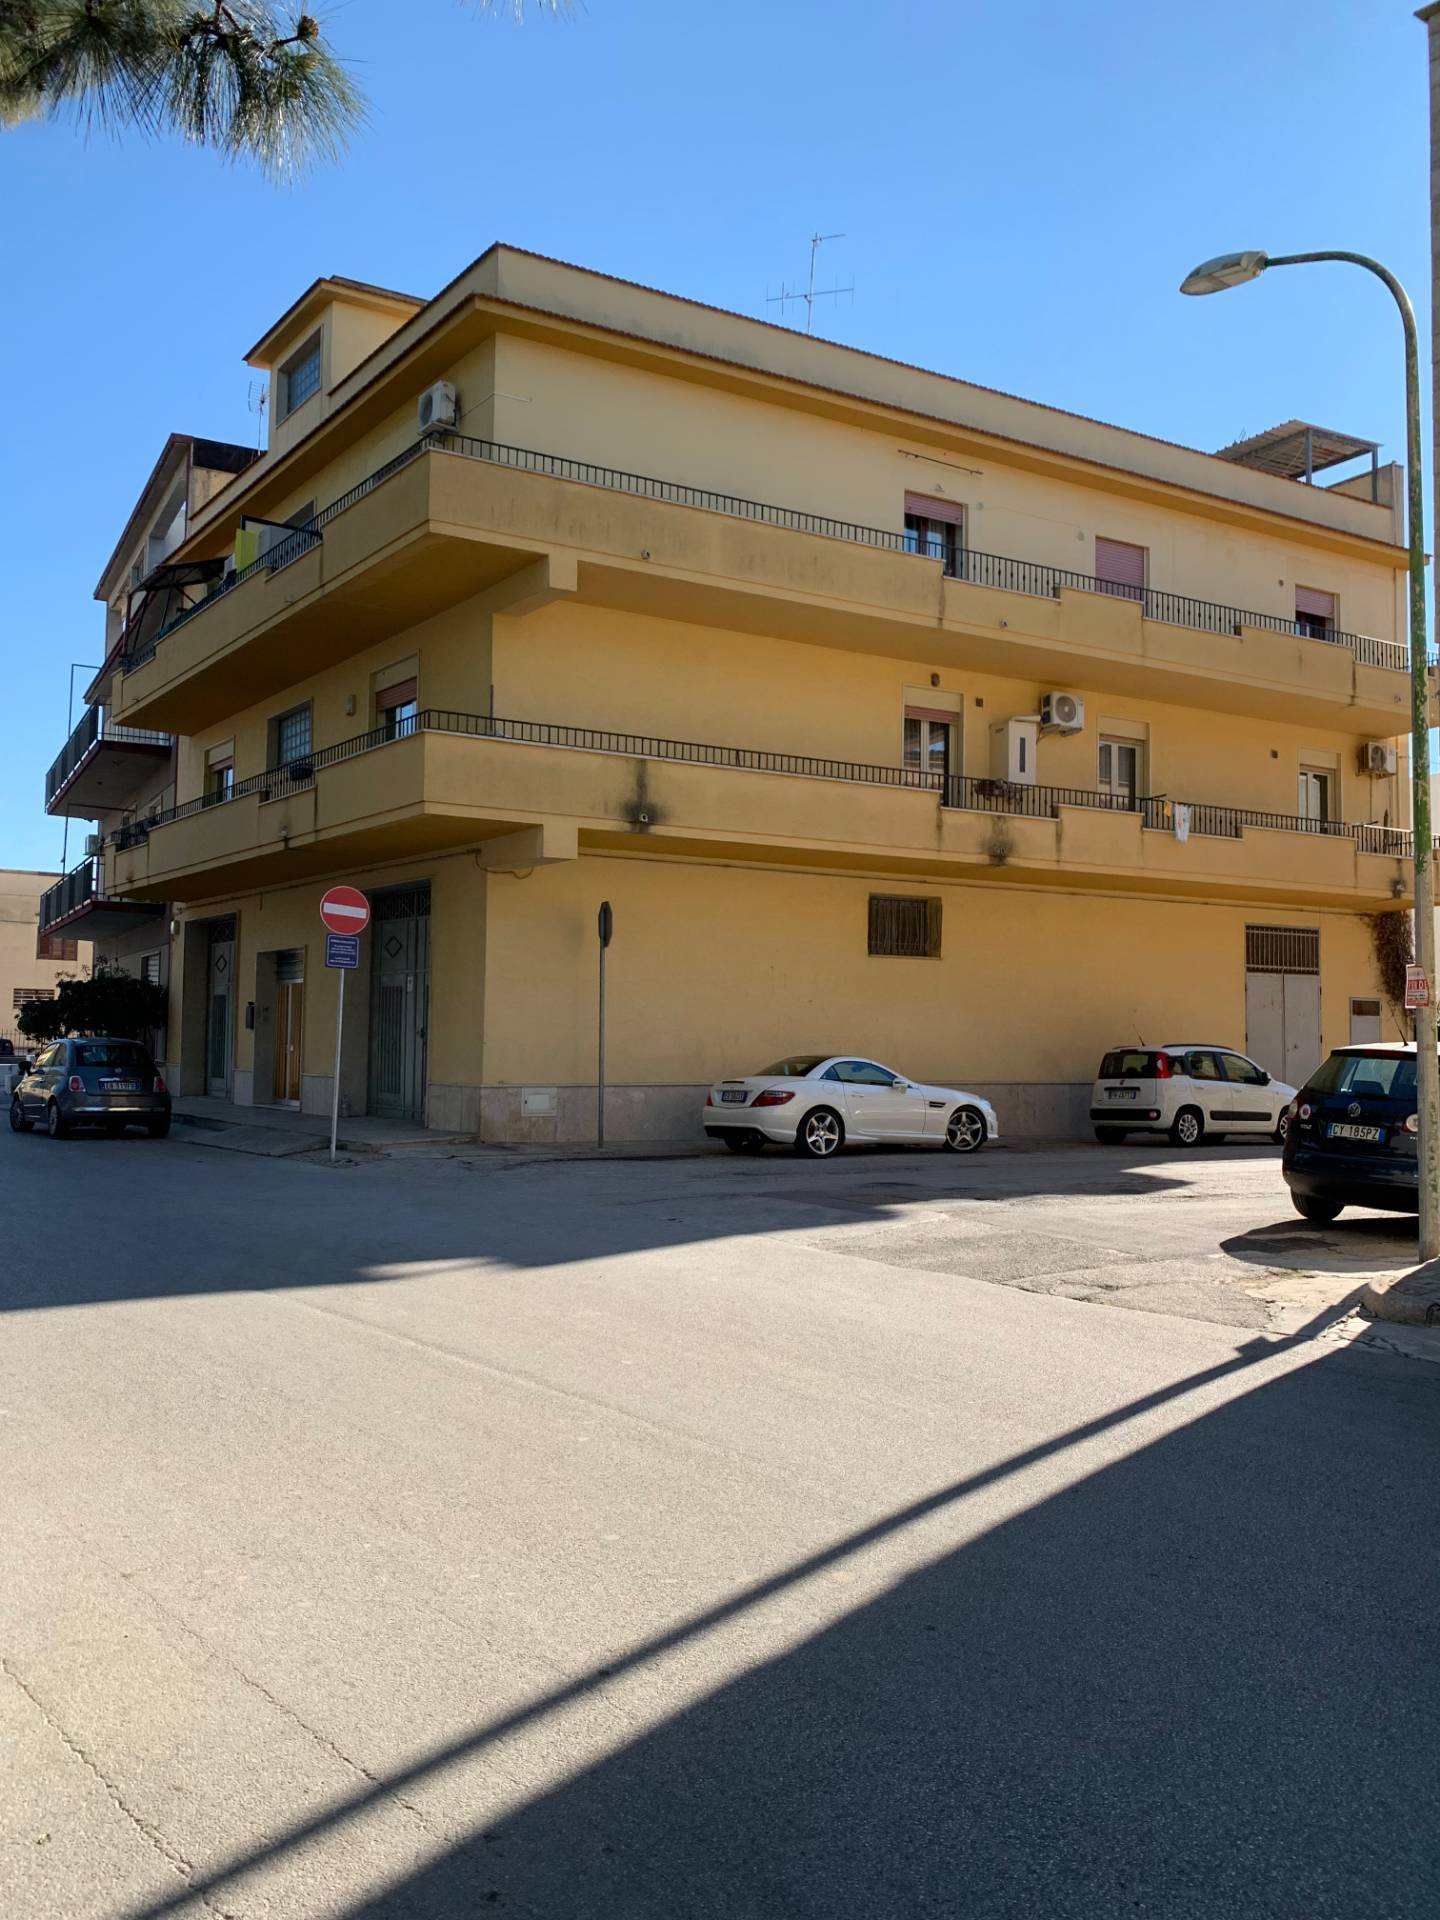 Appartamento in vendita a Castelvetrano, 4 locali, zona Località: CastelvetranoCitt?, prezzo € 85.000 | PortaleAgenzieImmobiliari.it